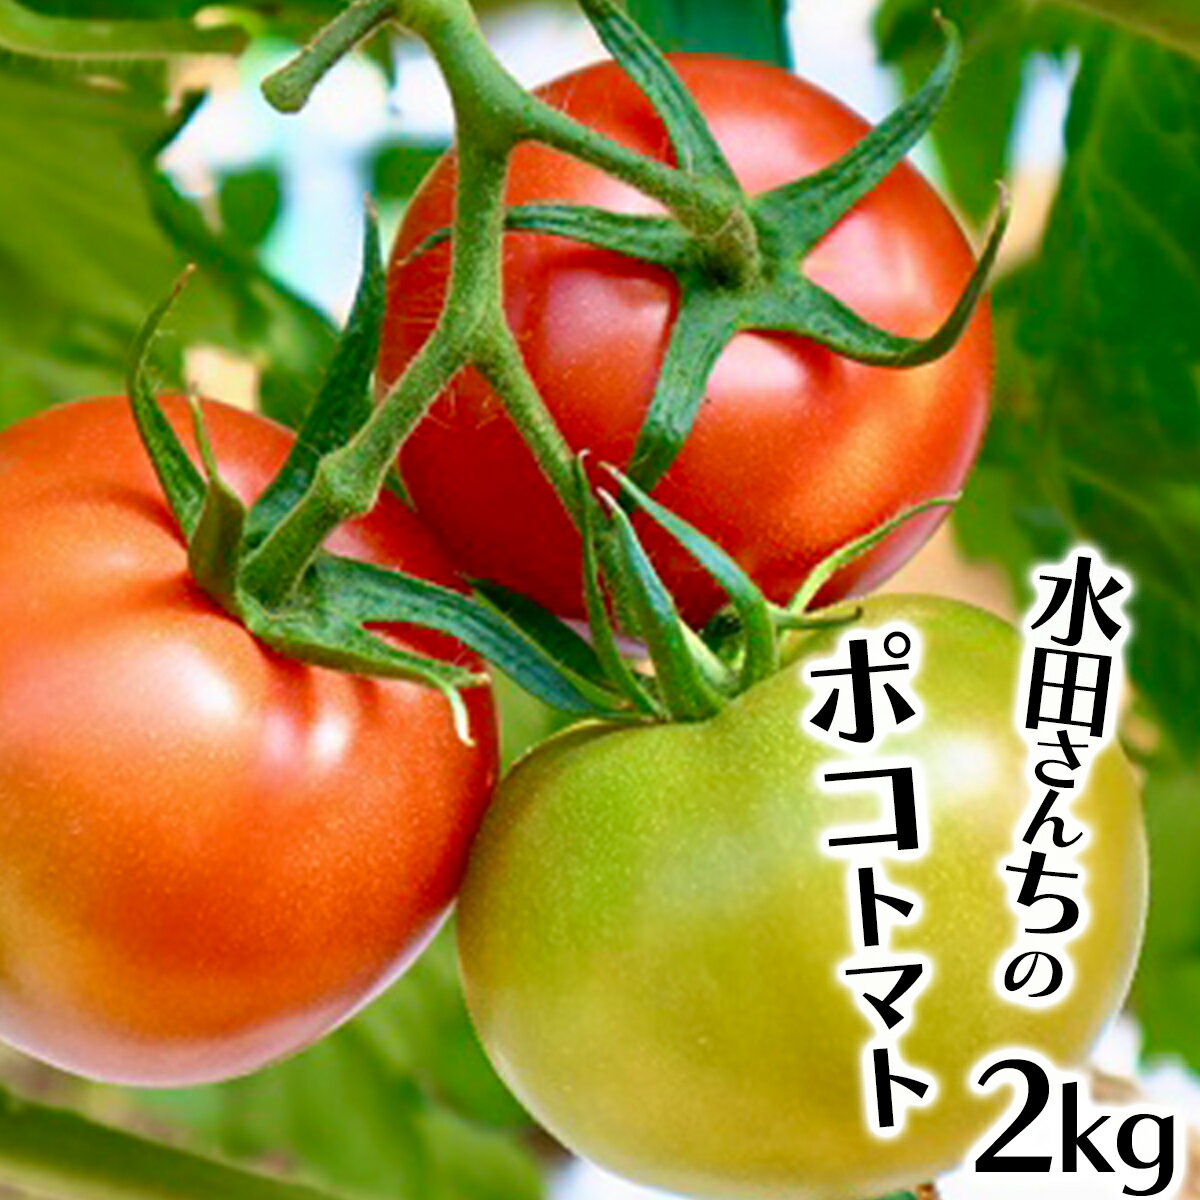 まっことうまい!水田さんのポコトマト[約2kg]